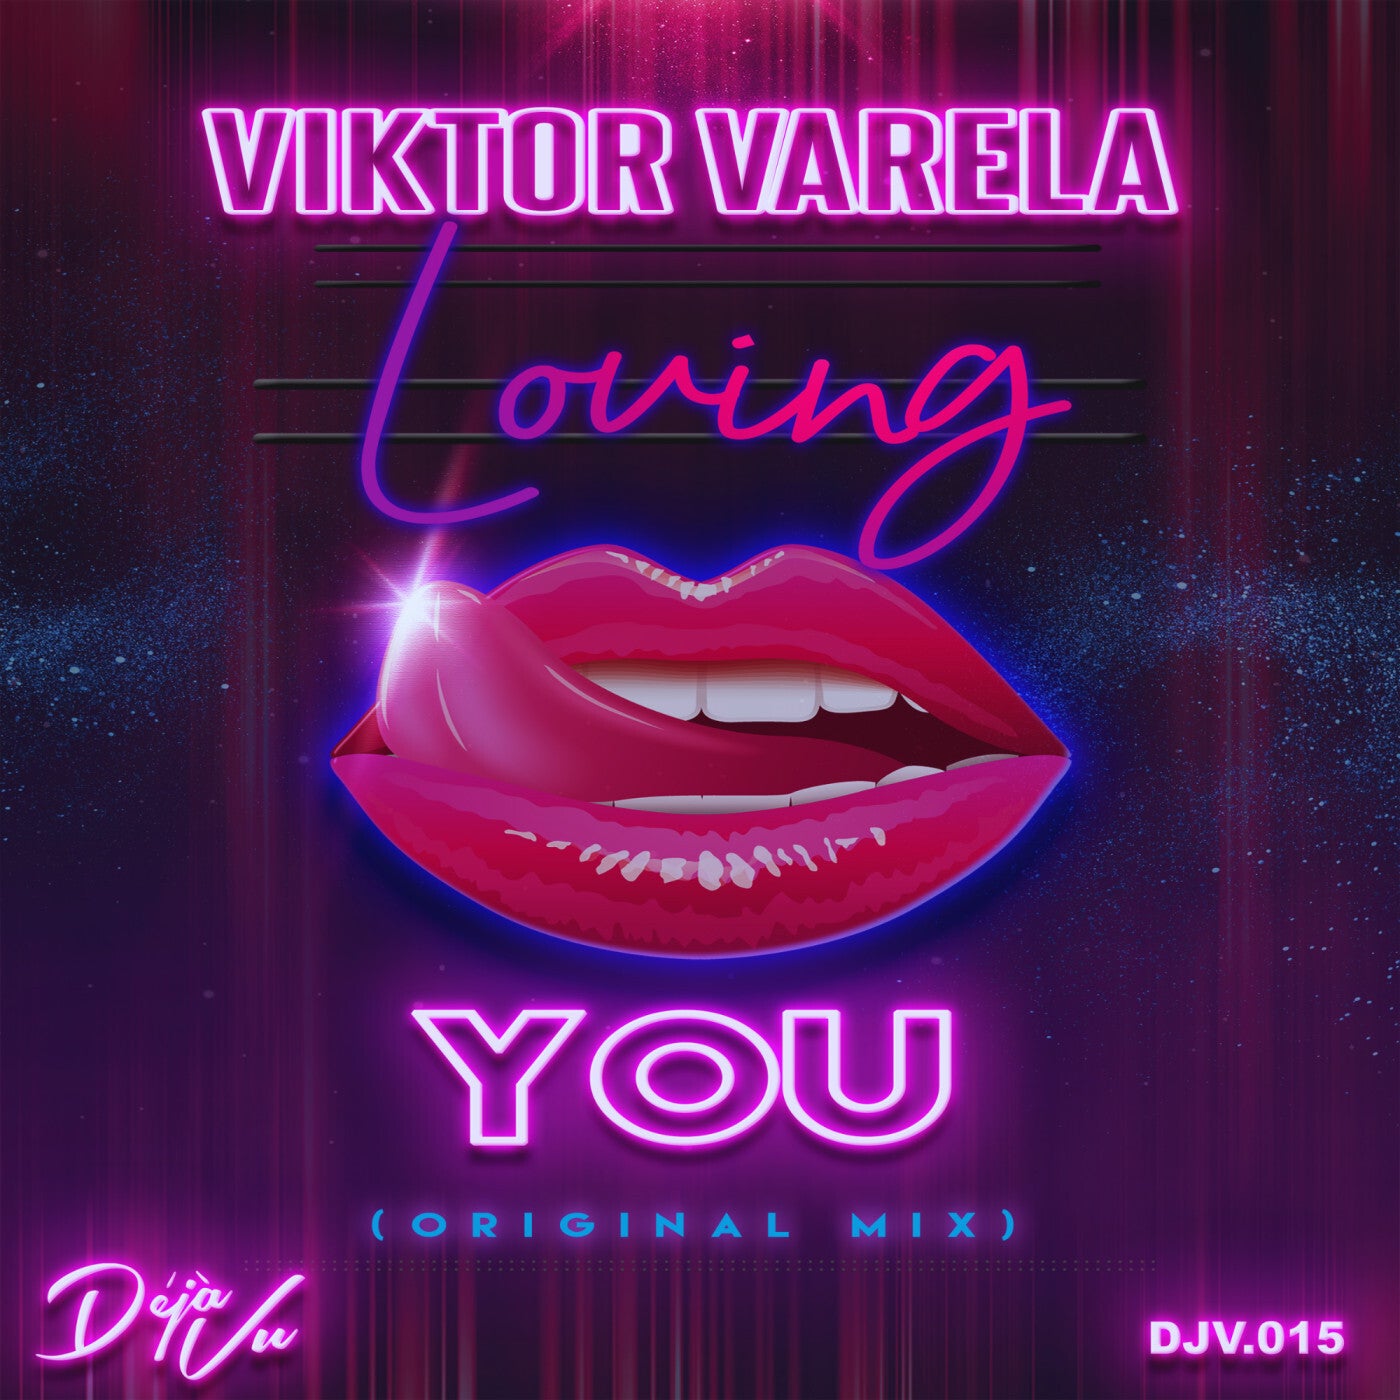 Loving You (Original Mix)